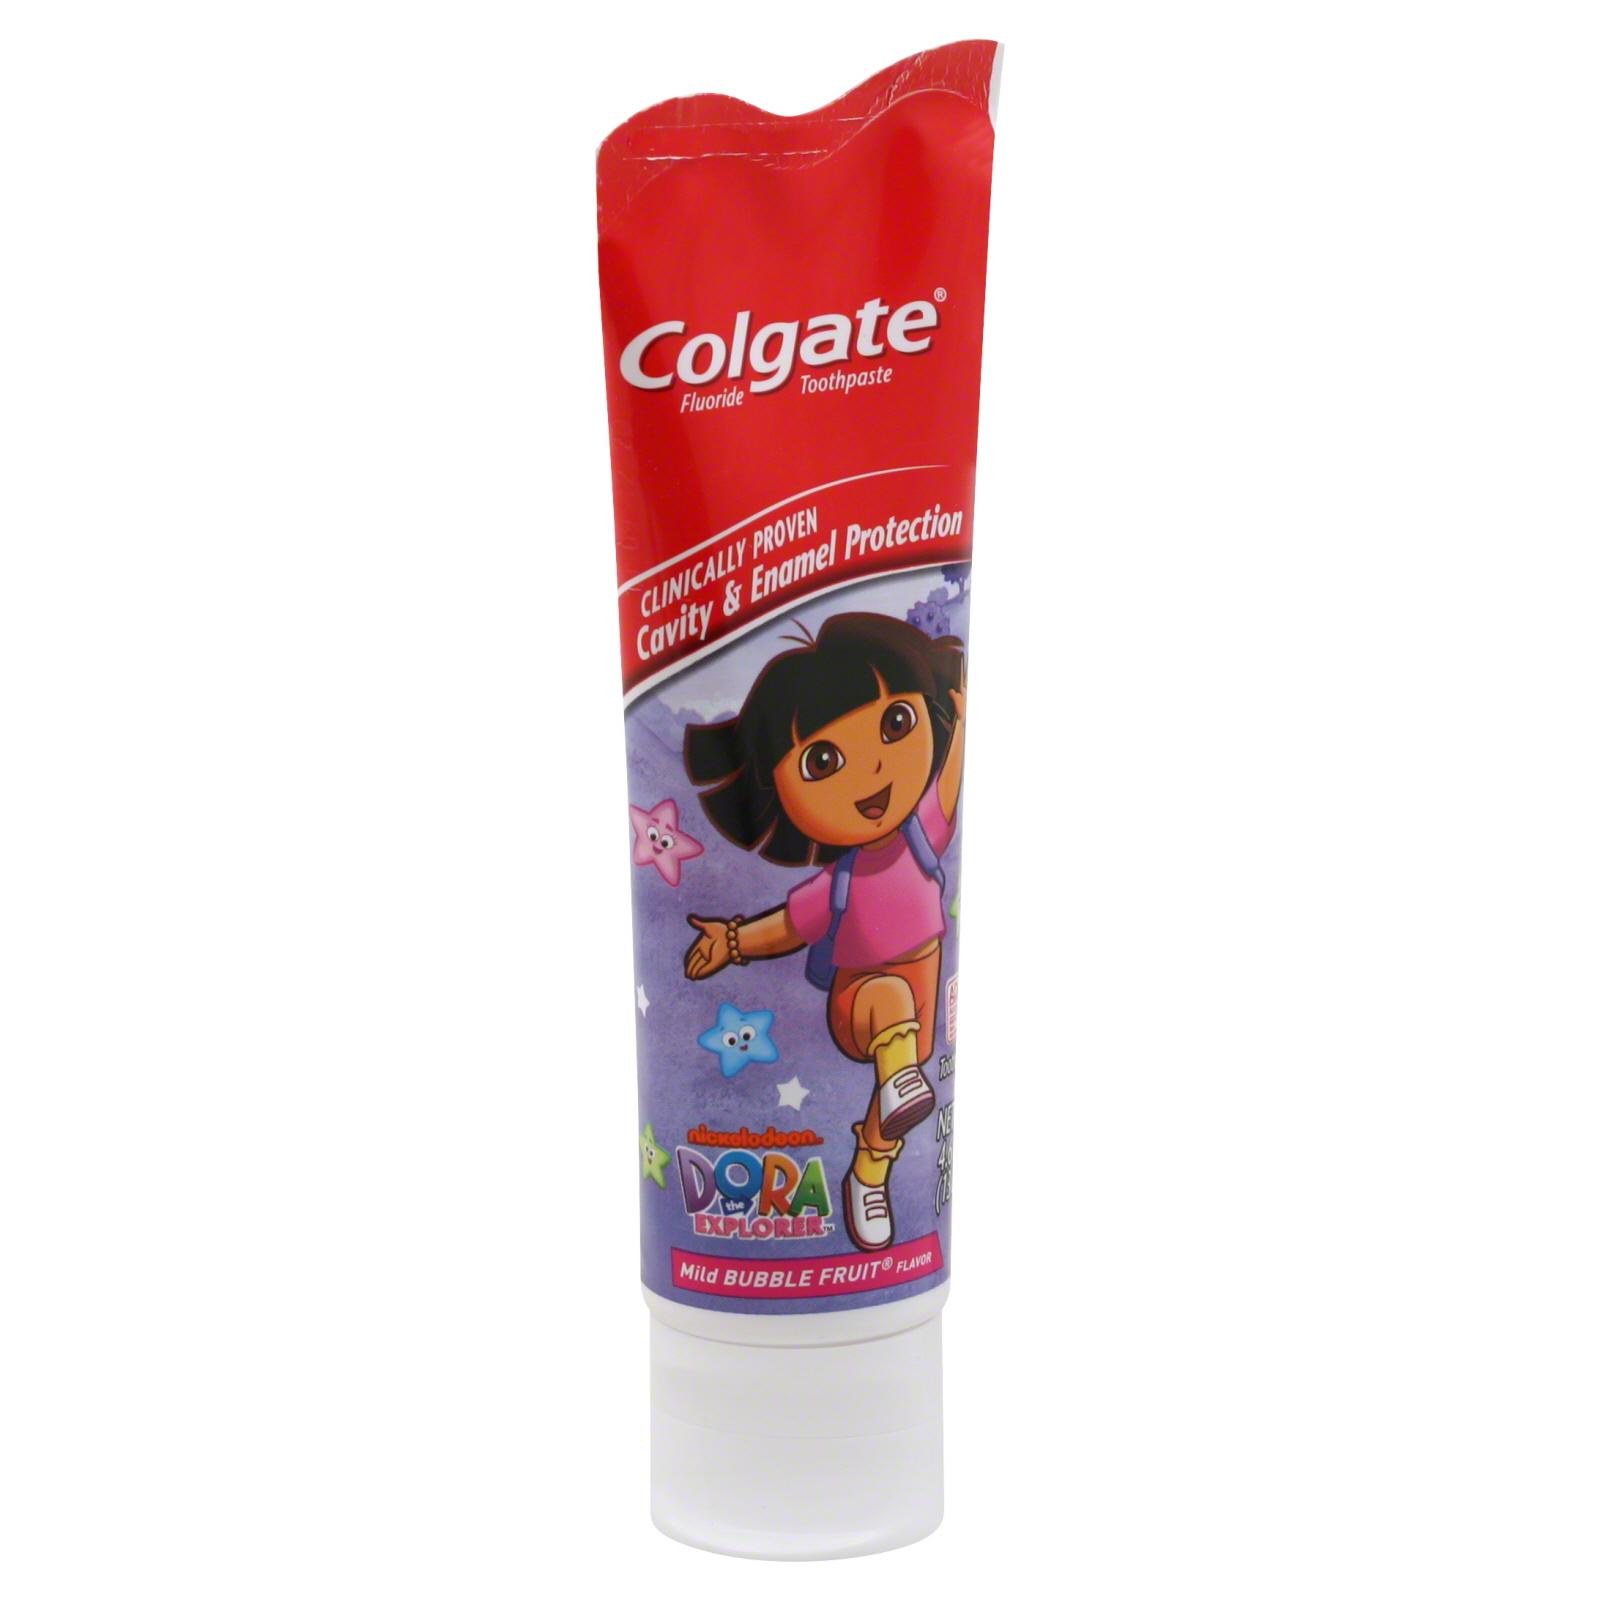 Colgate-Palmolive Toothpaste, Fluoride, Dora the Explorer, Mild Bubble Fruit Flavor, 4.6 oz (130 g)